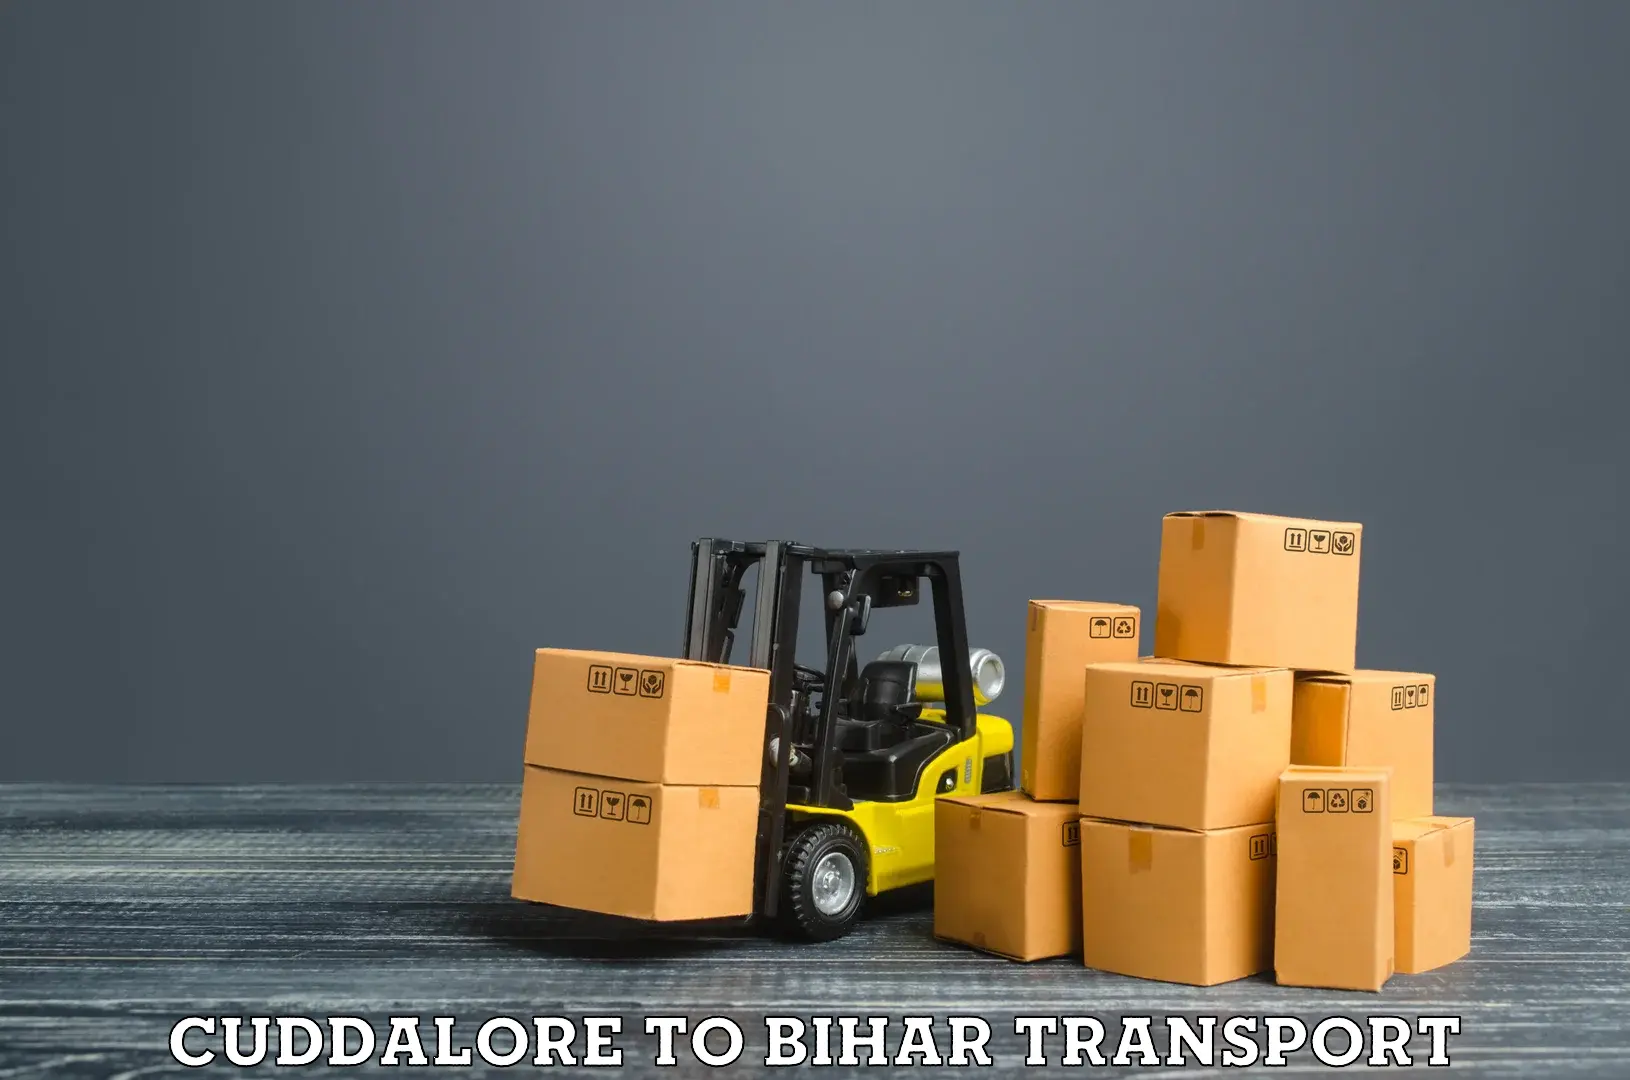 Delivery service Cuddalore to Biraul